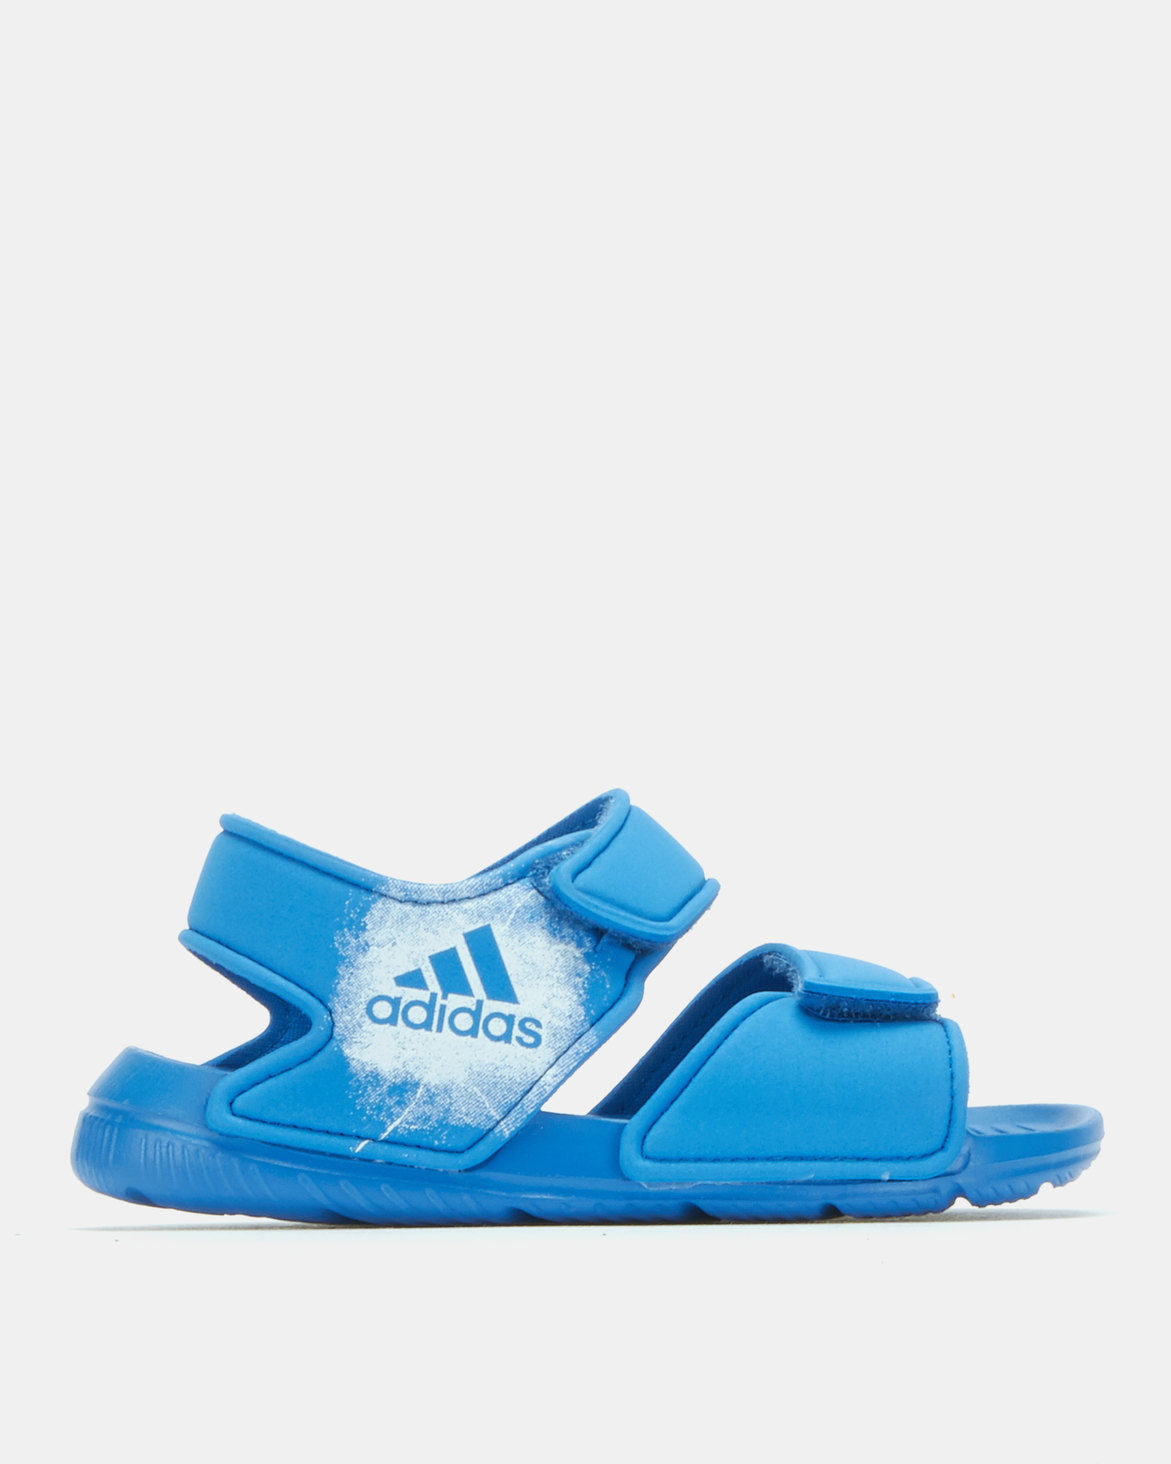 adidas Originals Boys Altaswim Sandals Blue | Zando